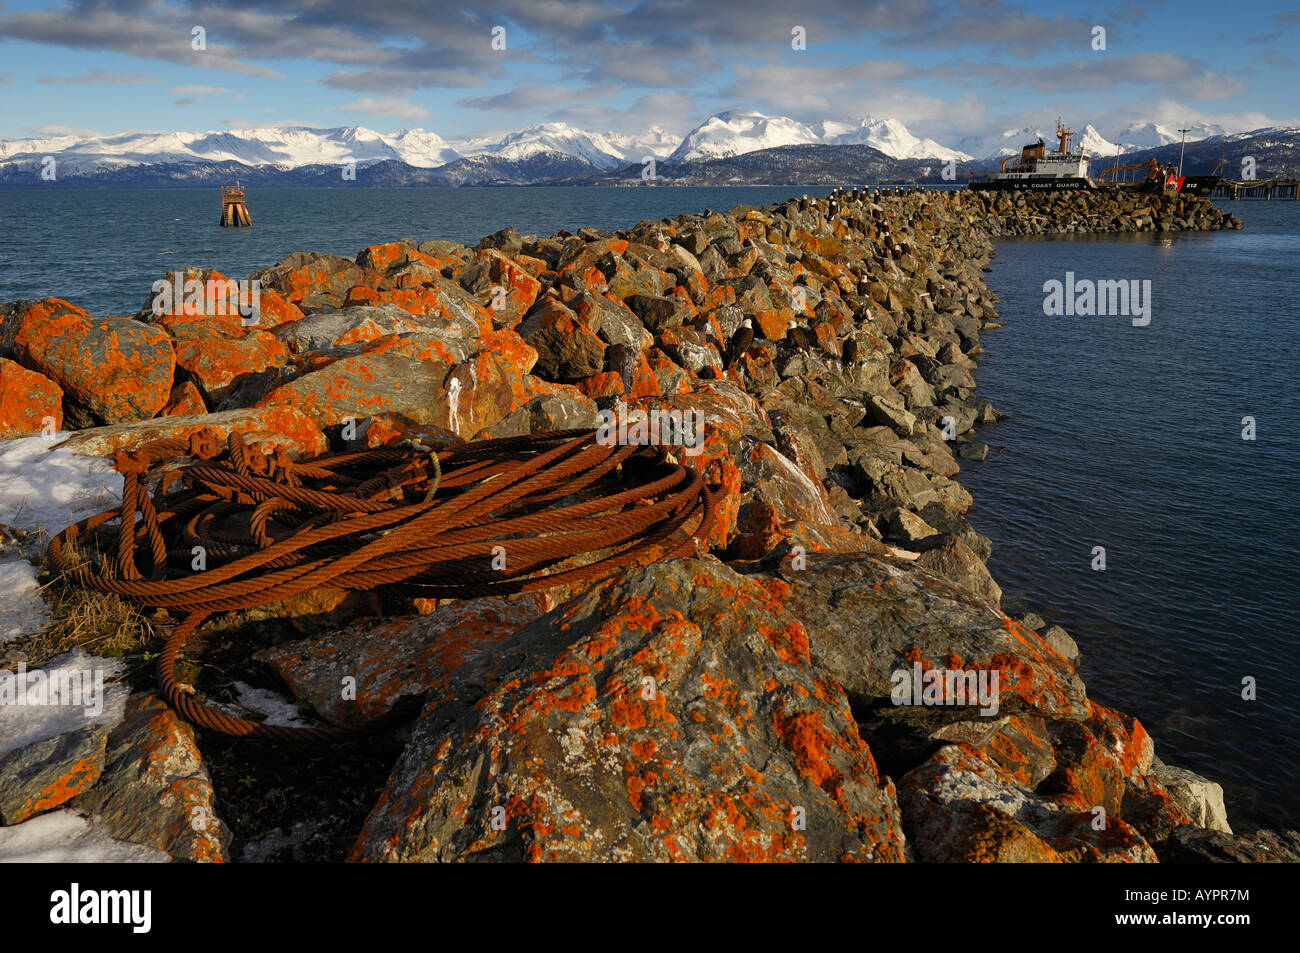 Las rocas cubiertas de líquenes utilizados por águilas como un puerto de desembarque perca, Homero, la Península Kenai, Alaska, EE.UU. Foto de stock